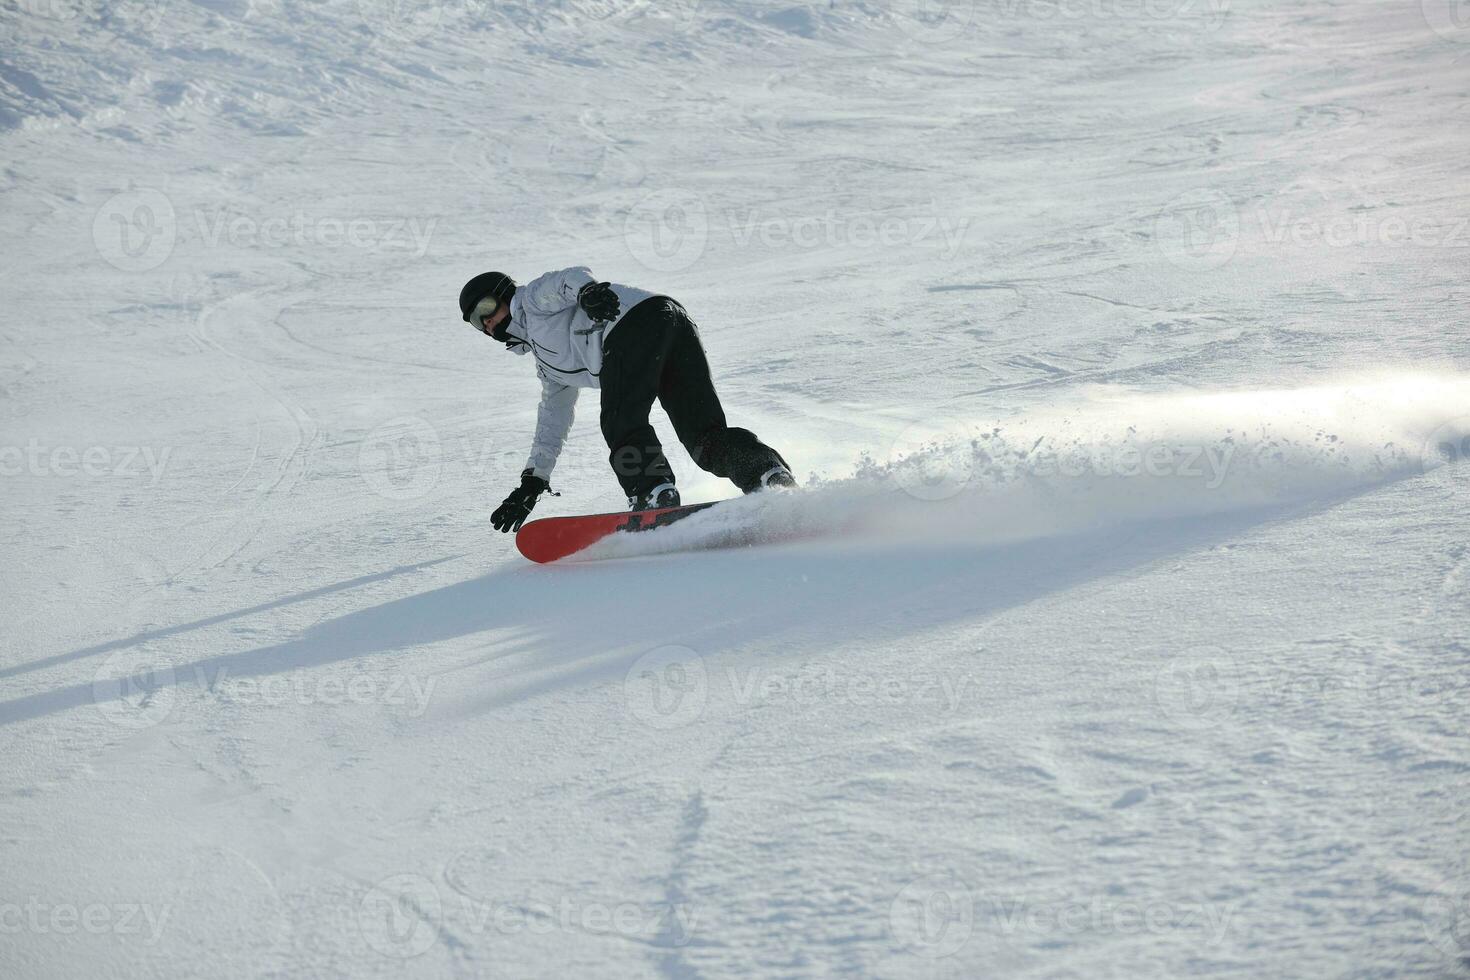 skidor på nu på vintersäsongen foto